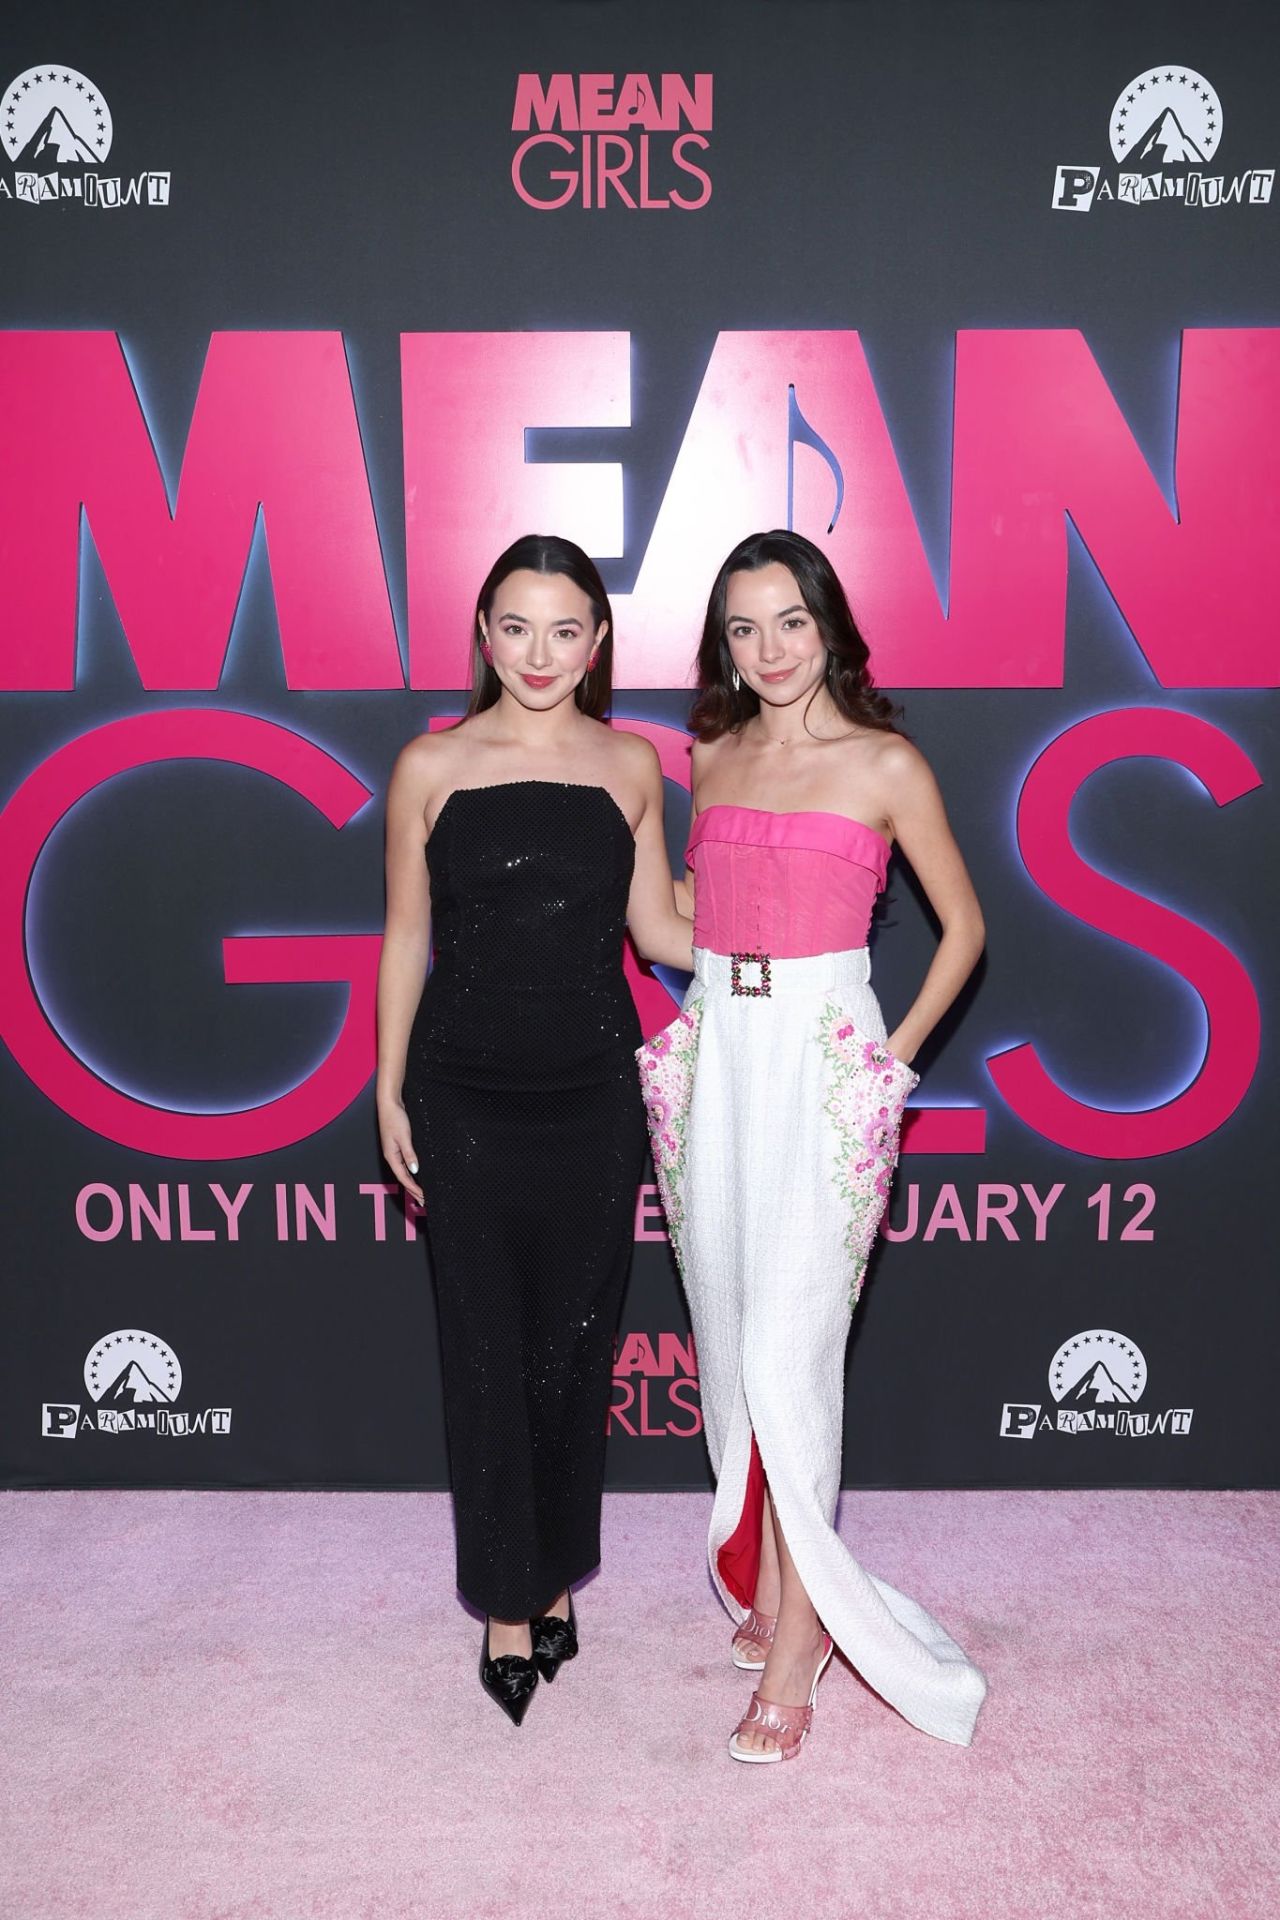 Vanessa Merrell and Veronica Merrell-Burriss – “Mean Girls” Advance ...